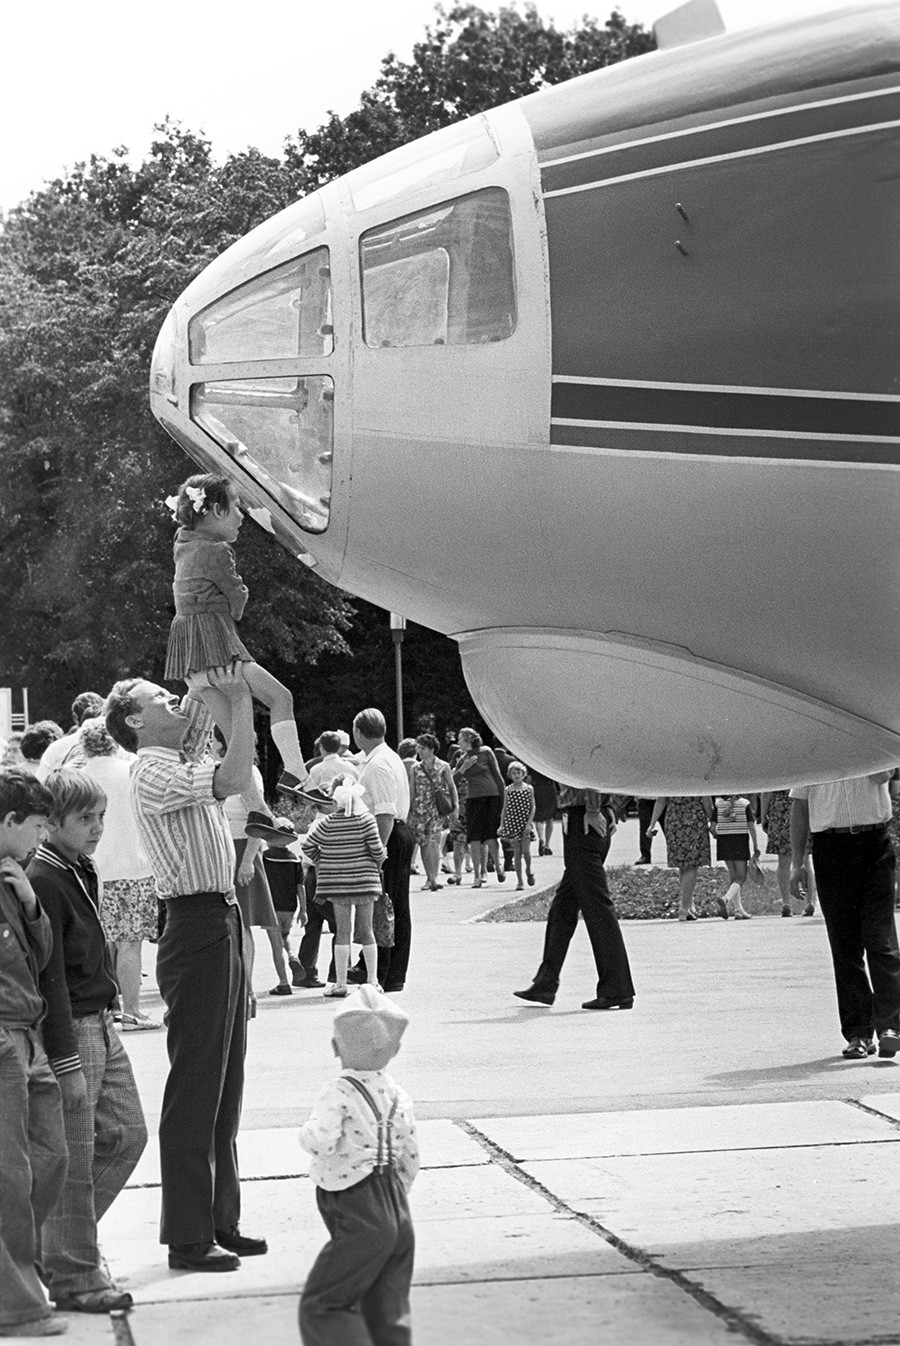 The Antoshka cinema plane, based on An-10, in Kuibyshev’s park named after Yuri Gagarin (now Samara), 1977.